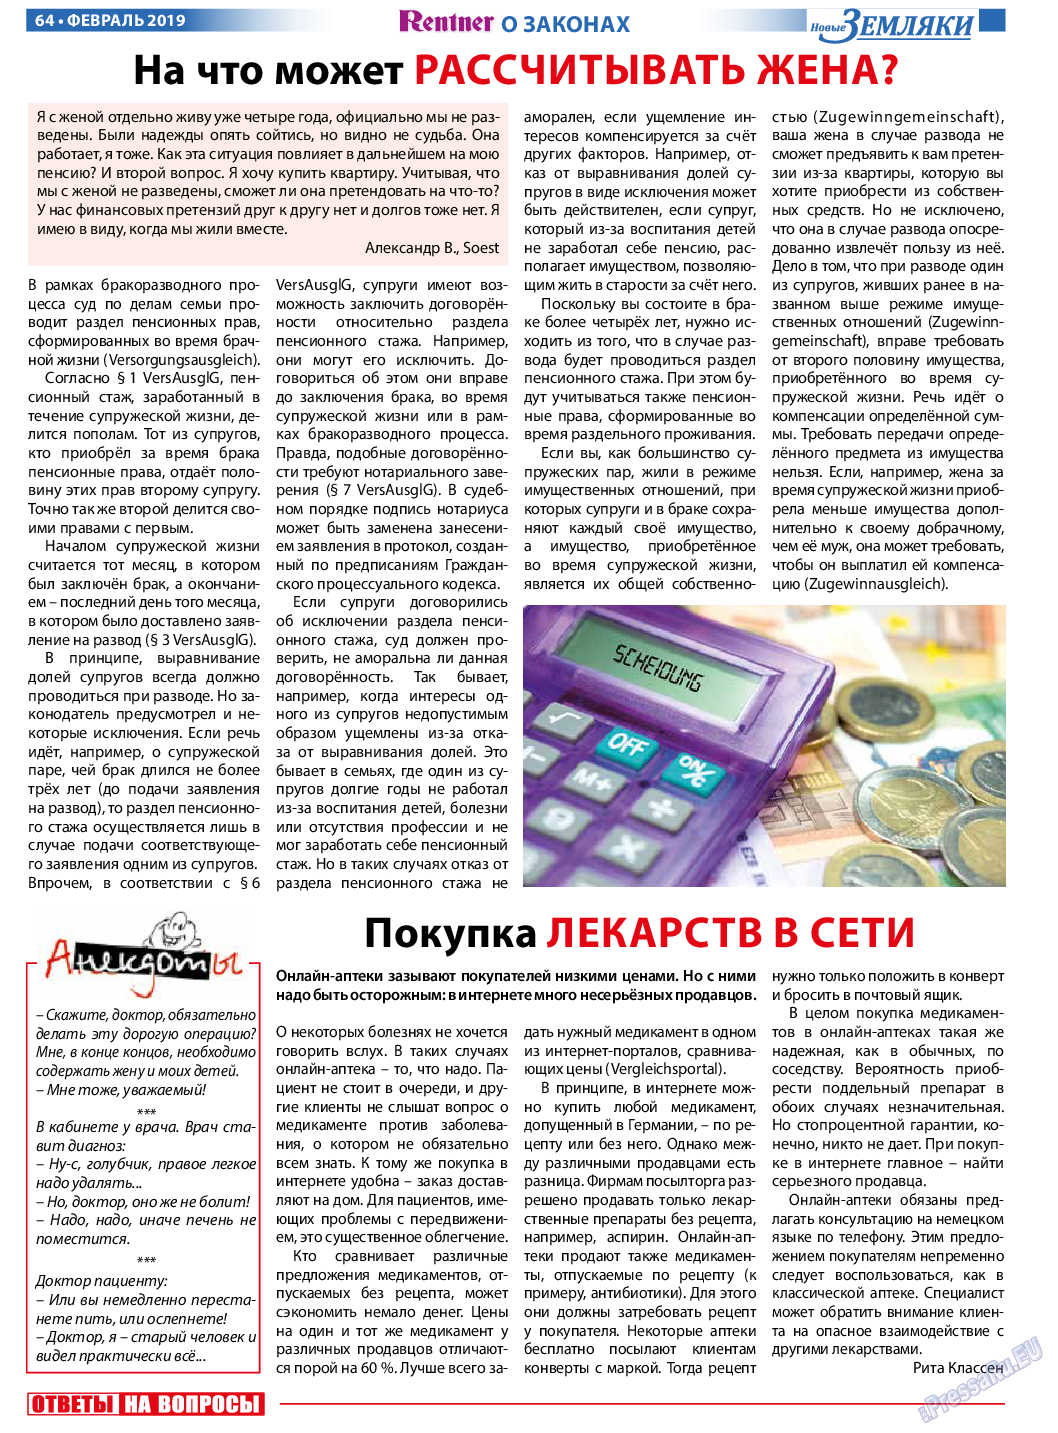 Новые Земляки, газета. 2019 №2 стр.64